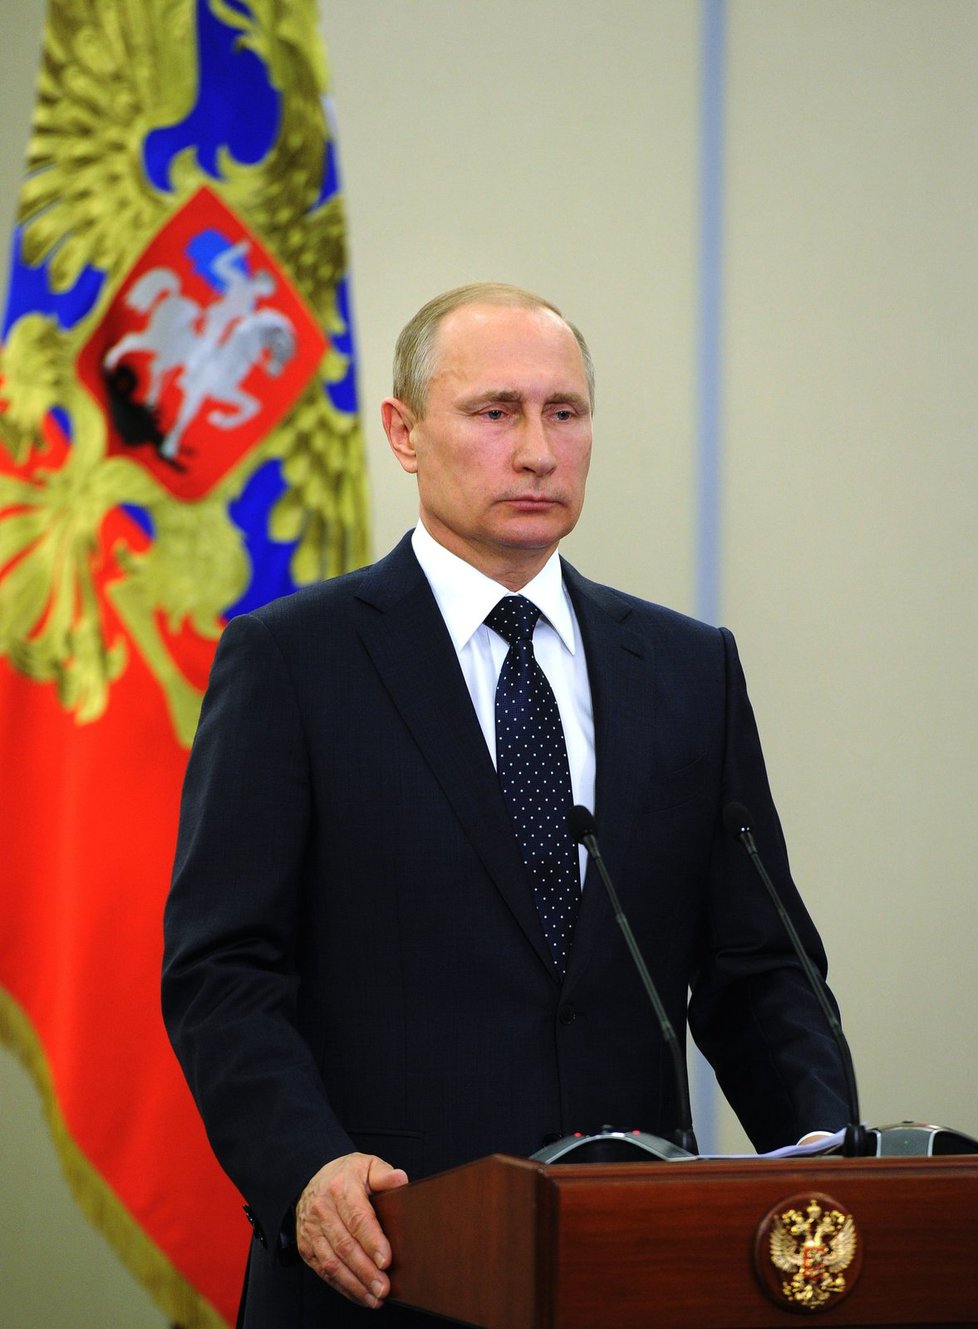 NATO ohrožuje Rusko: Musíme odstranit hrozby, říká Putin.